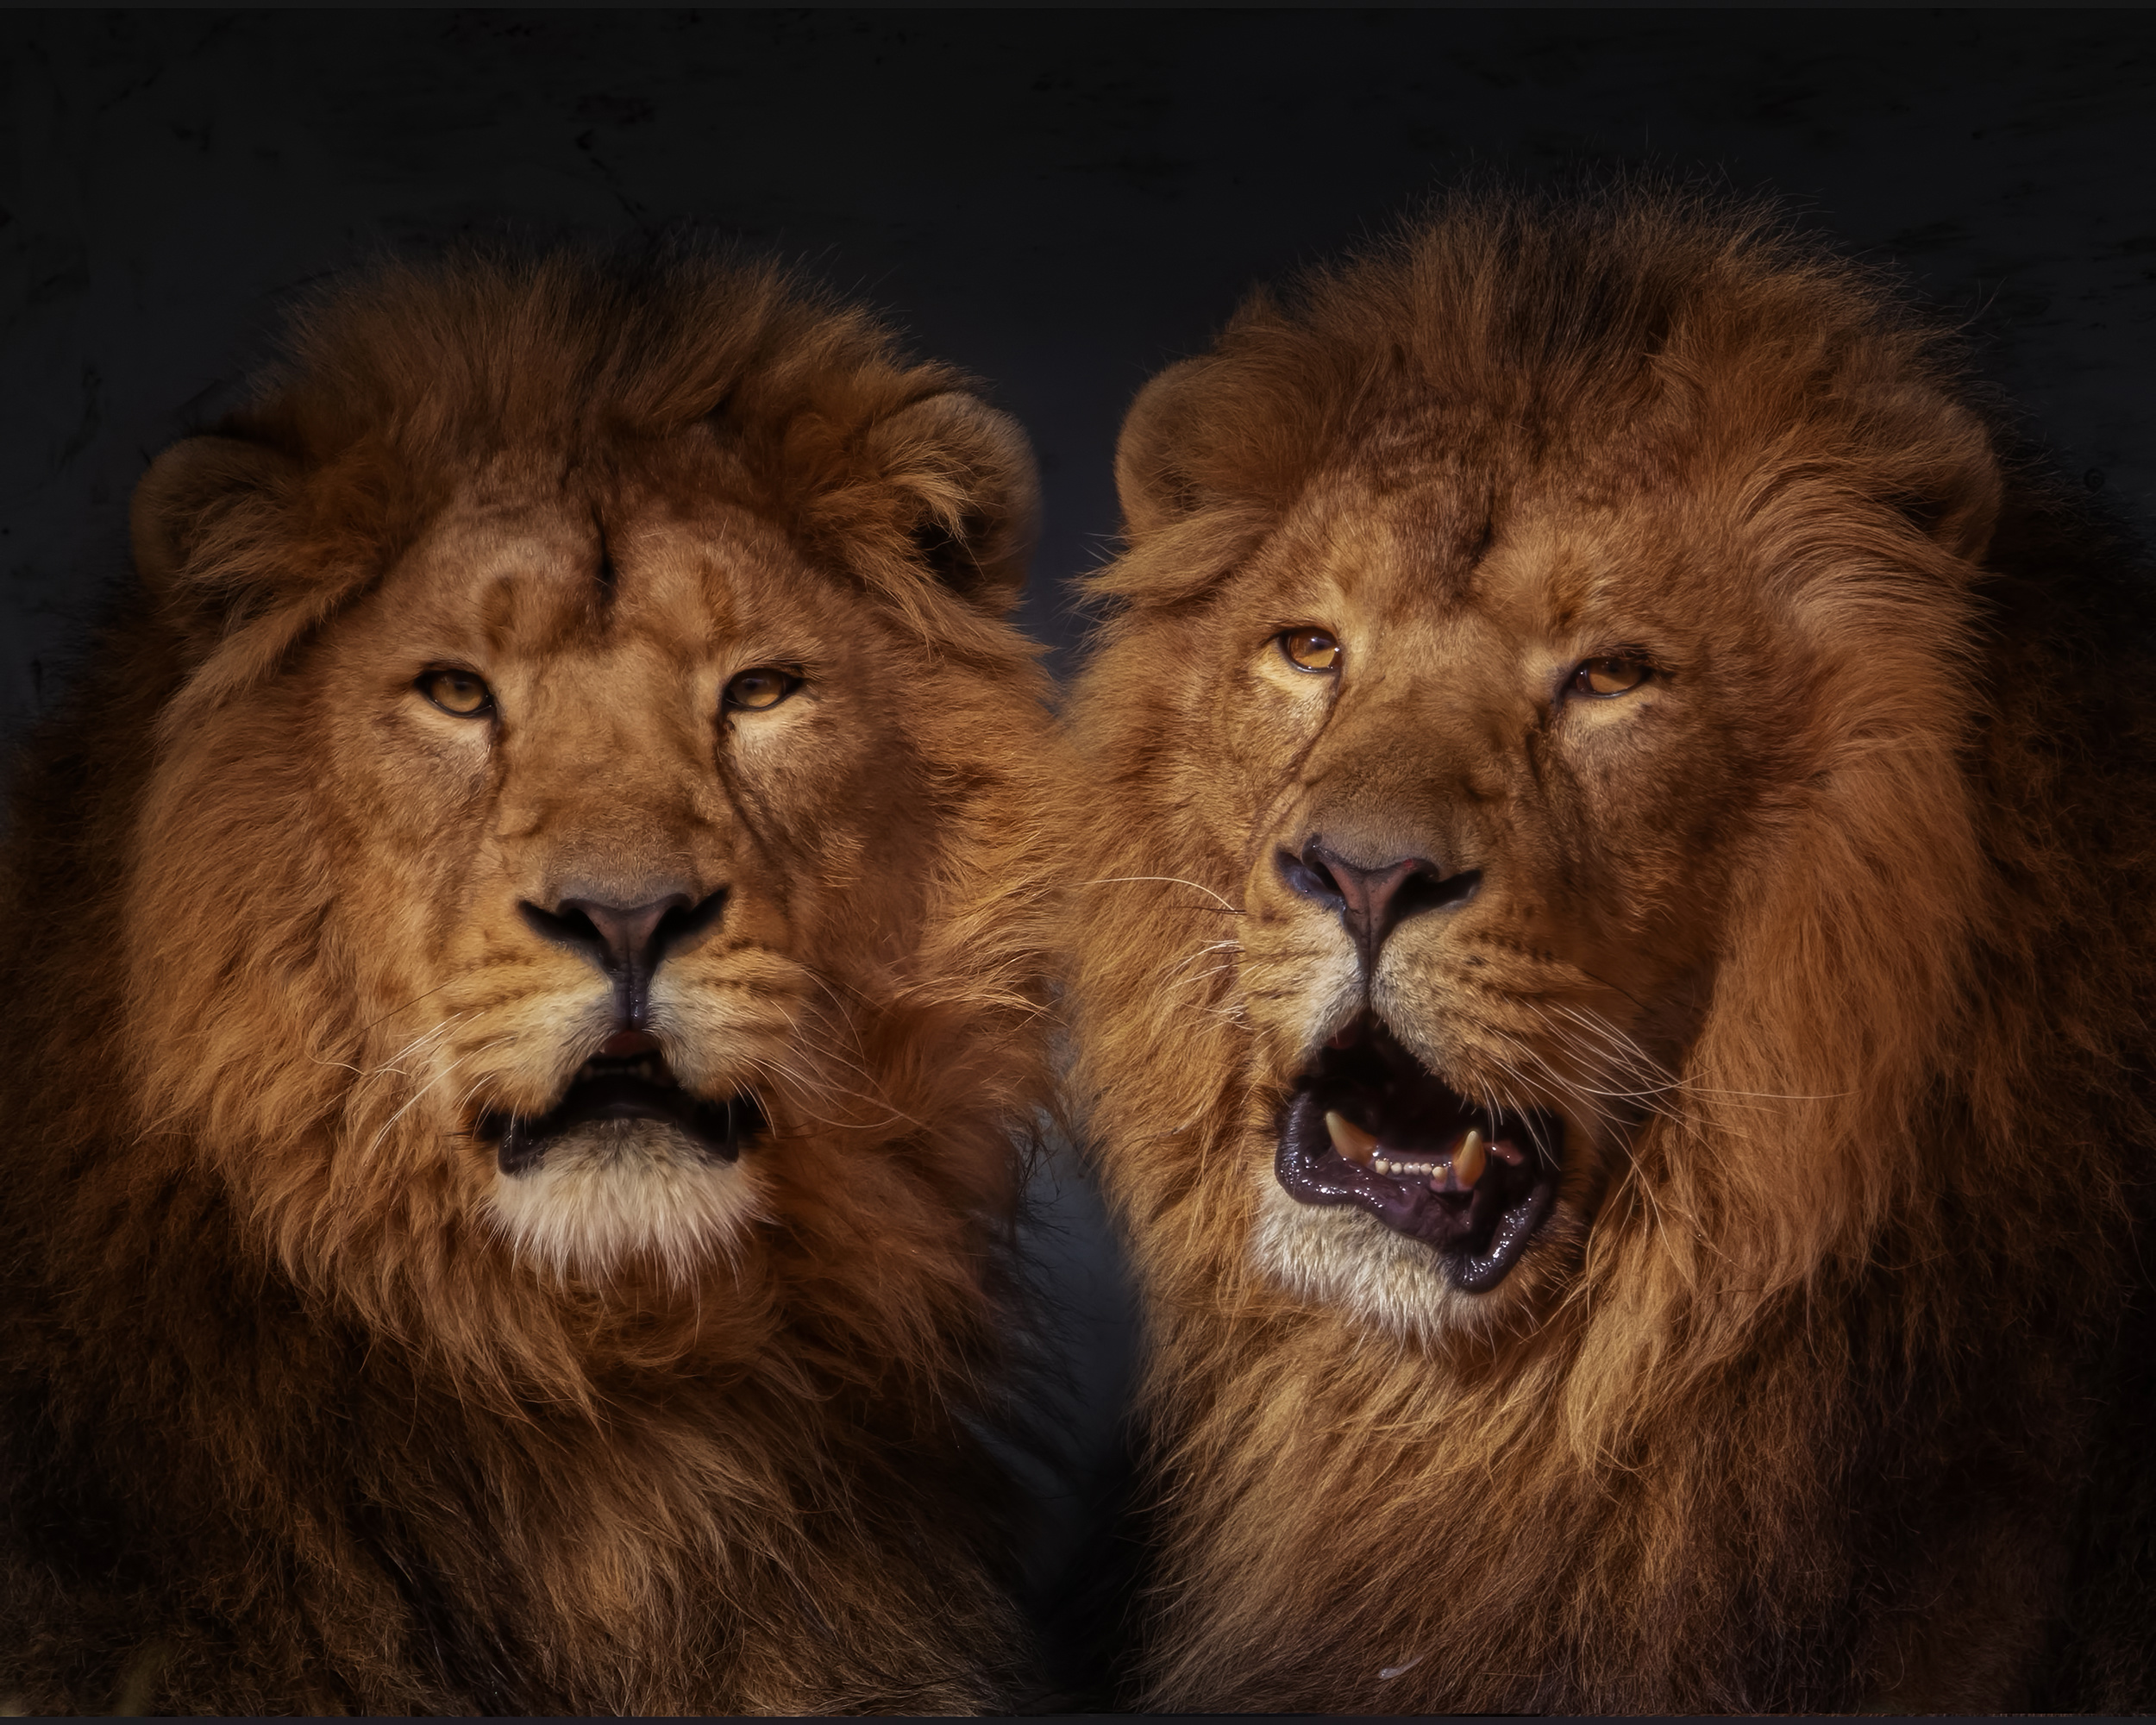 Лева 2 часа. Изображение Льва. Львы братья. Лев картинки. Морда Льва.